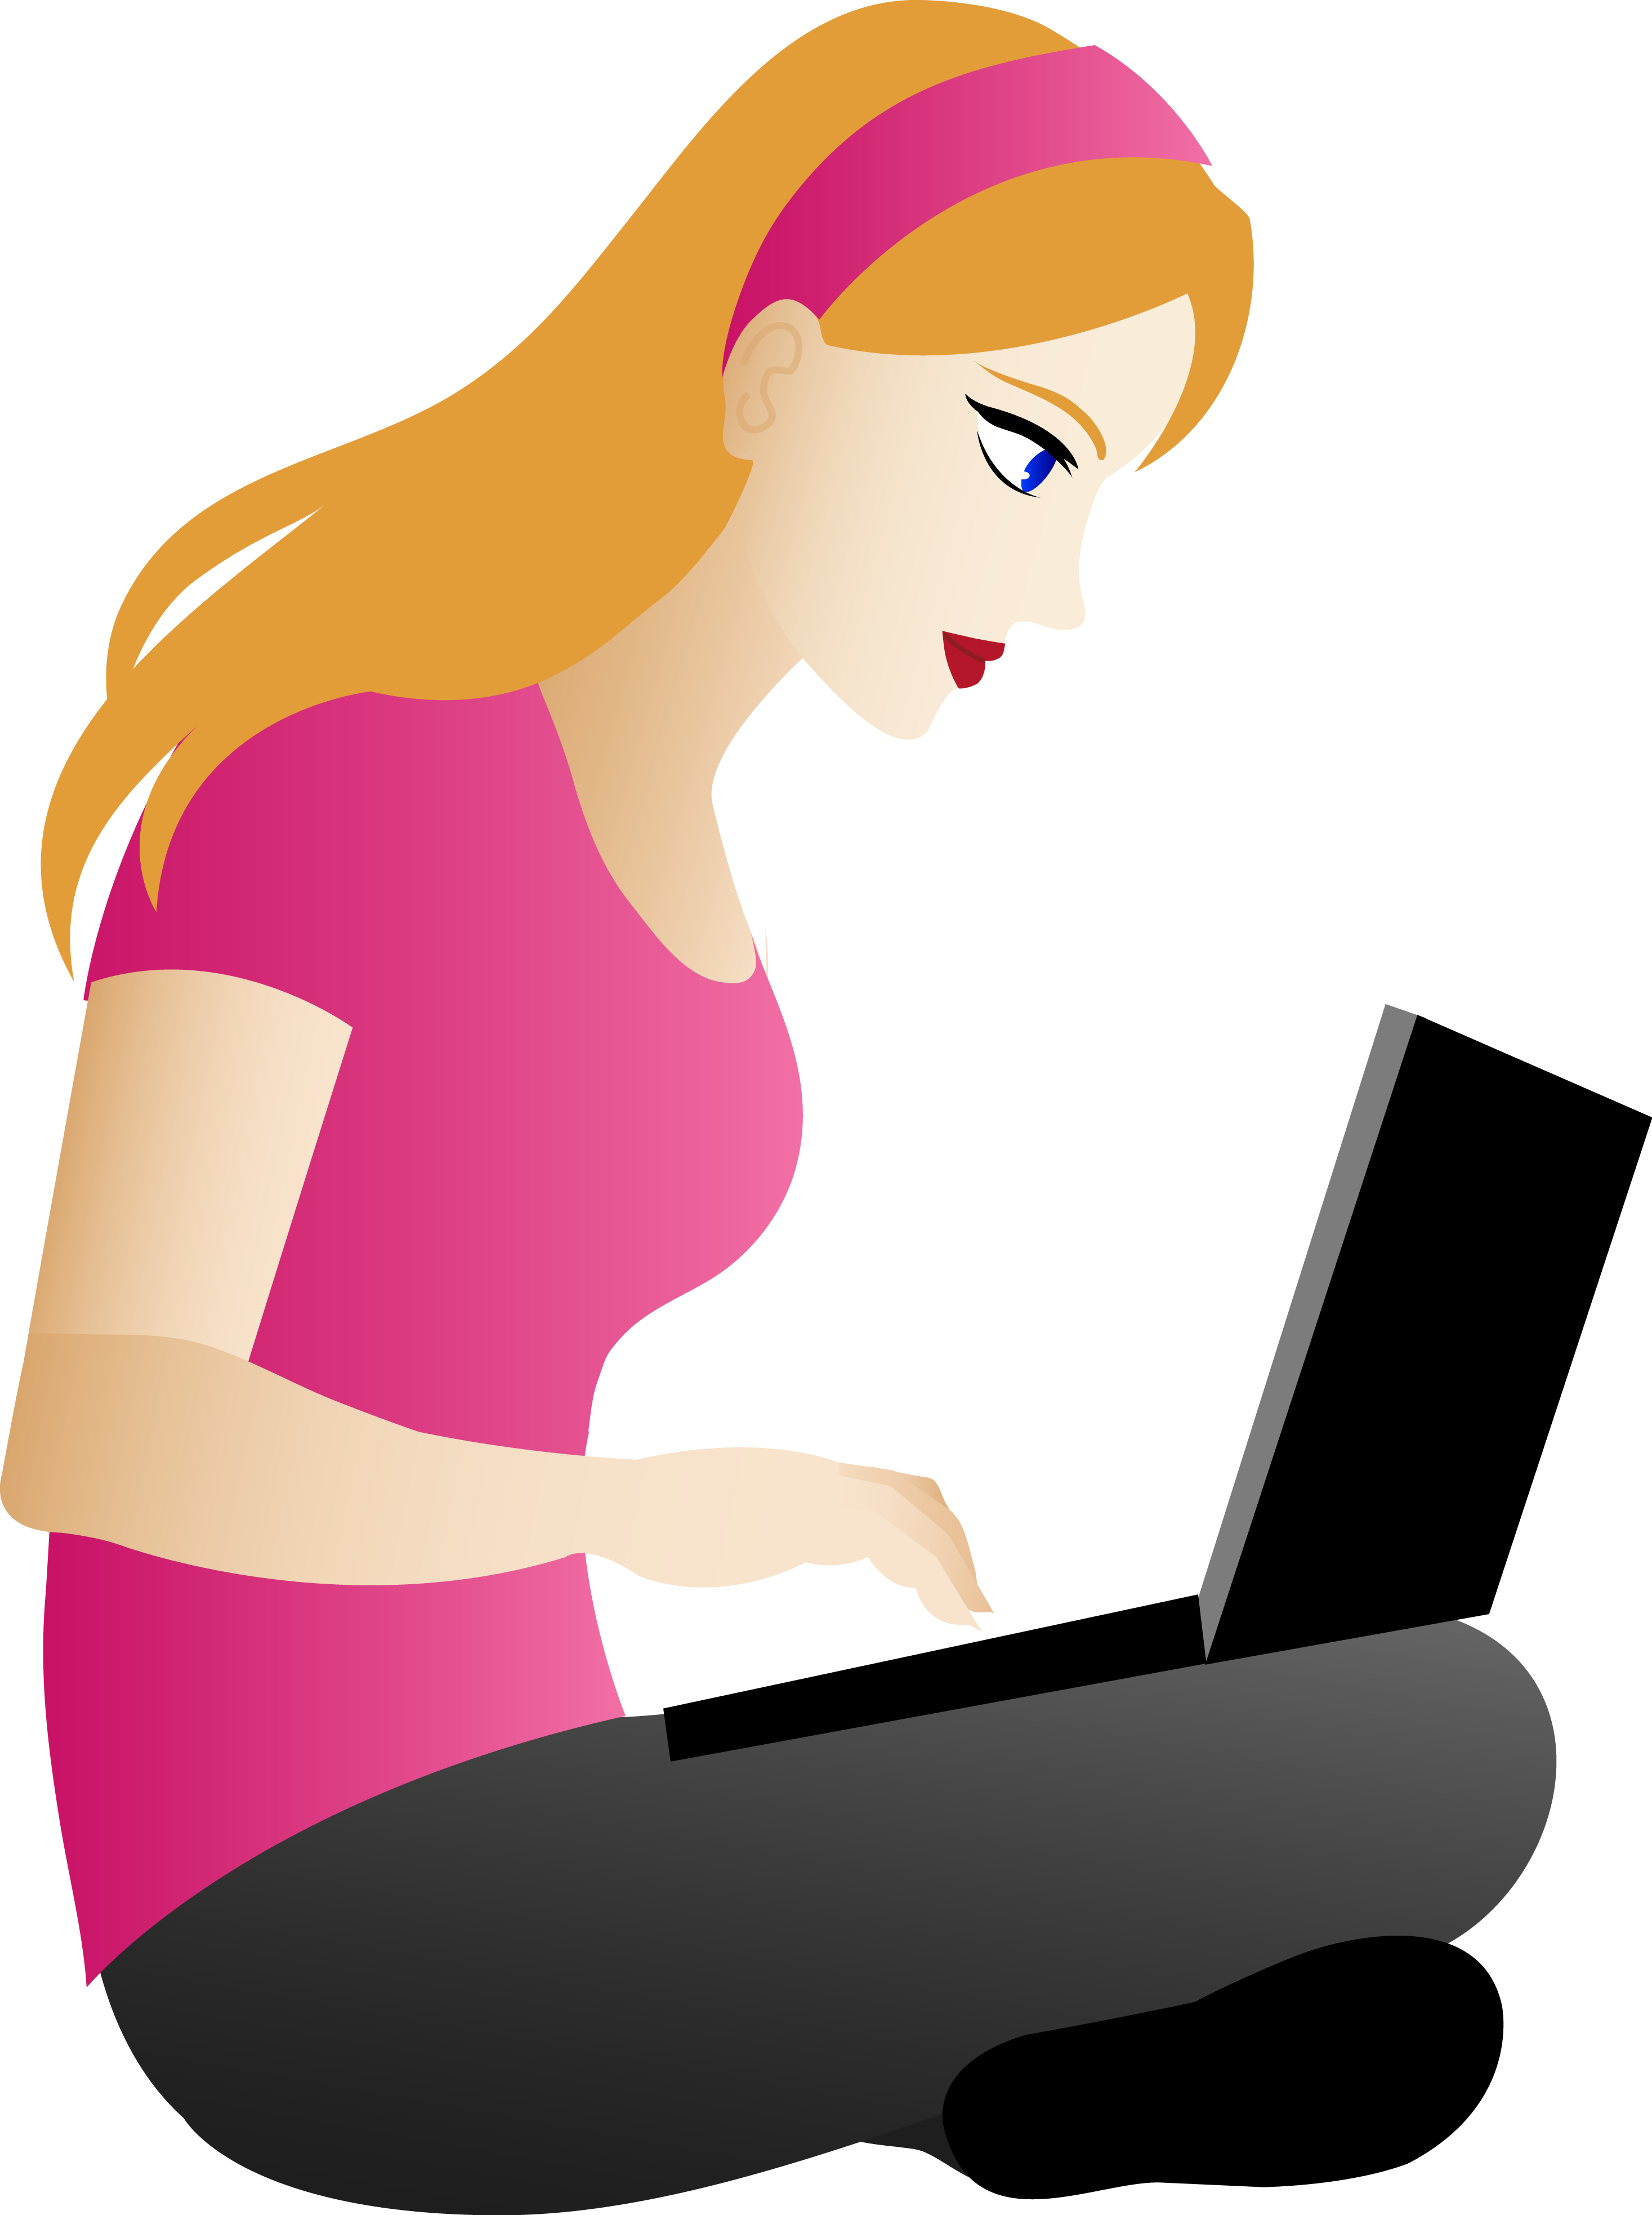 Человек за компьютером. Девушка за компьютером рисунок. Женщина сидит за компьютером. Девушка сидит за компьютером. Сижу у мамы на работе